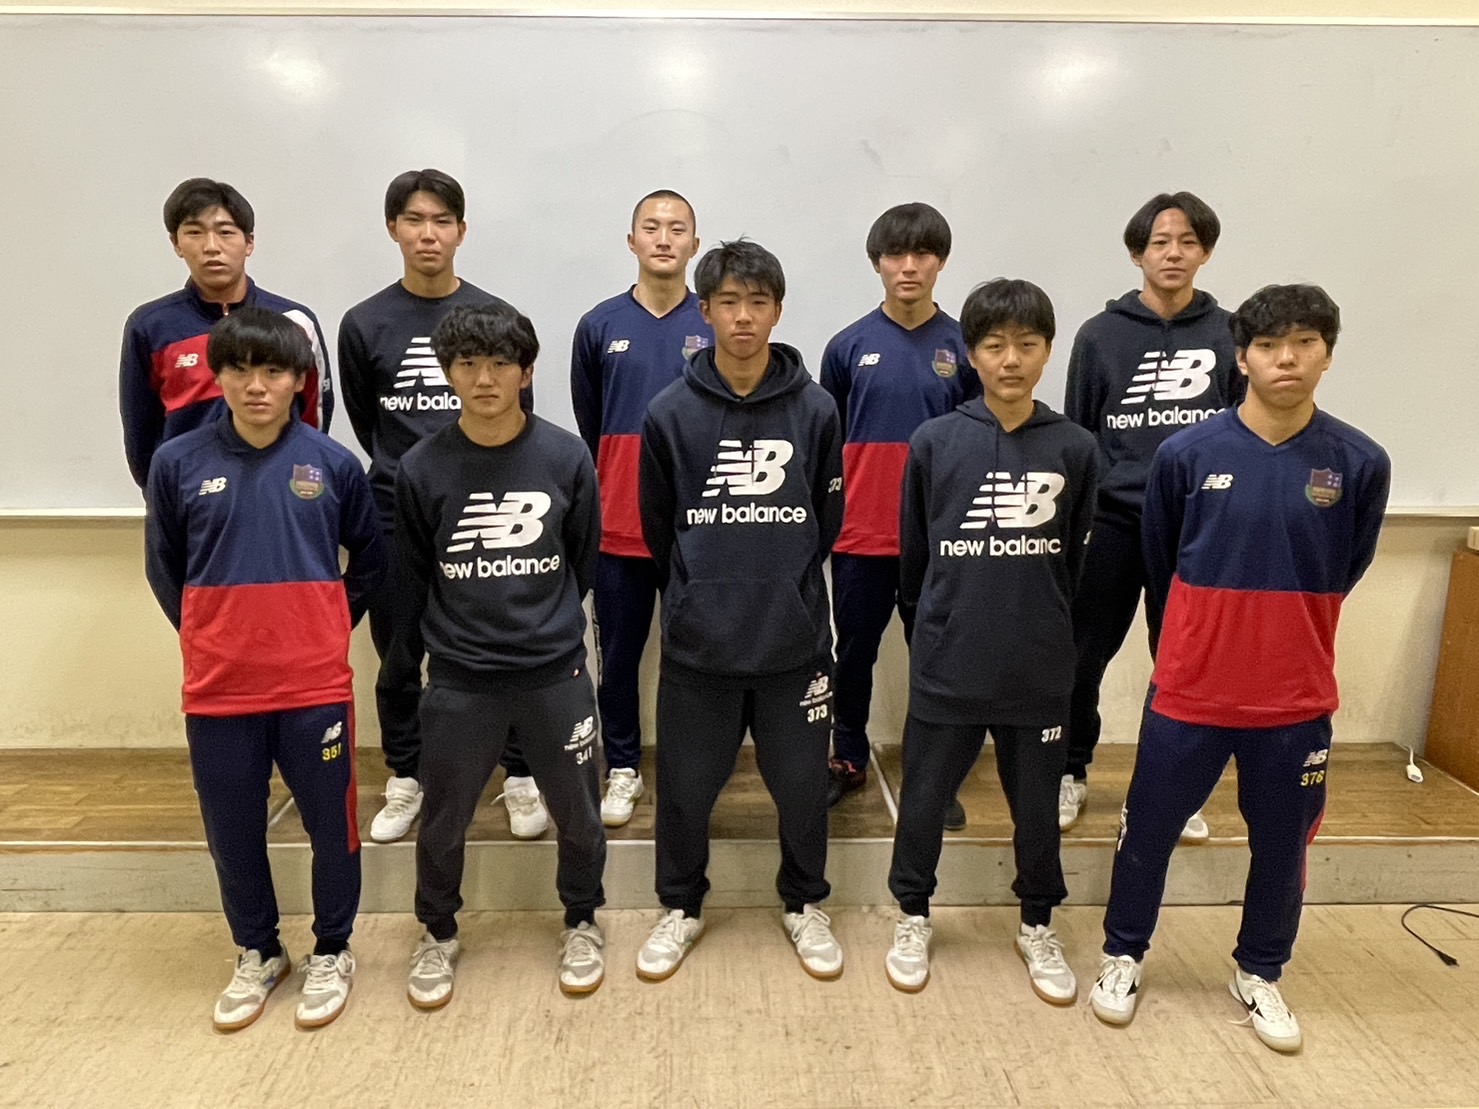 札幌第一高校サッカー部 ユニフォーム、ポロシャツ - ウェア